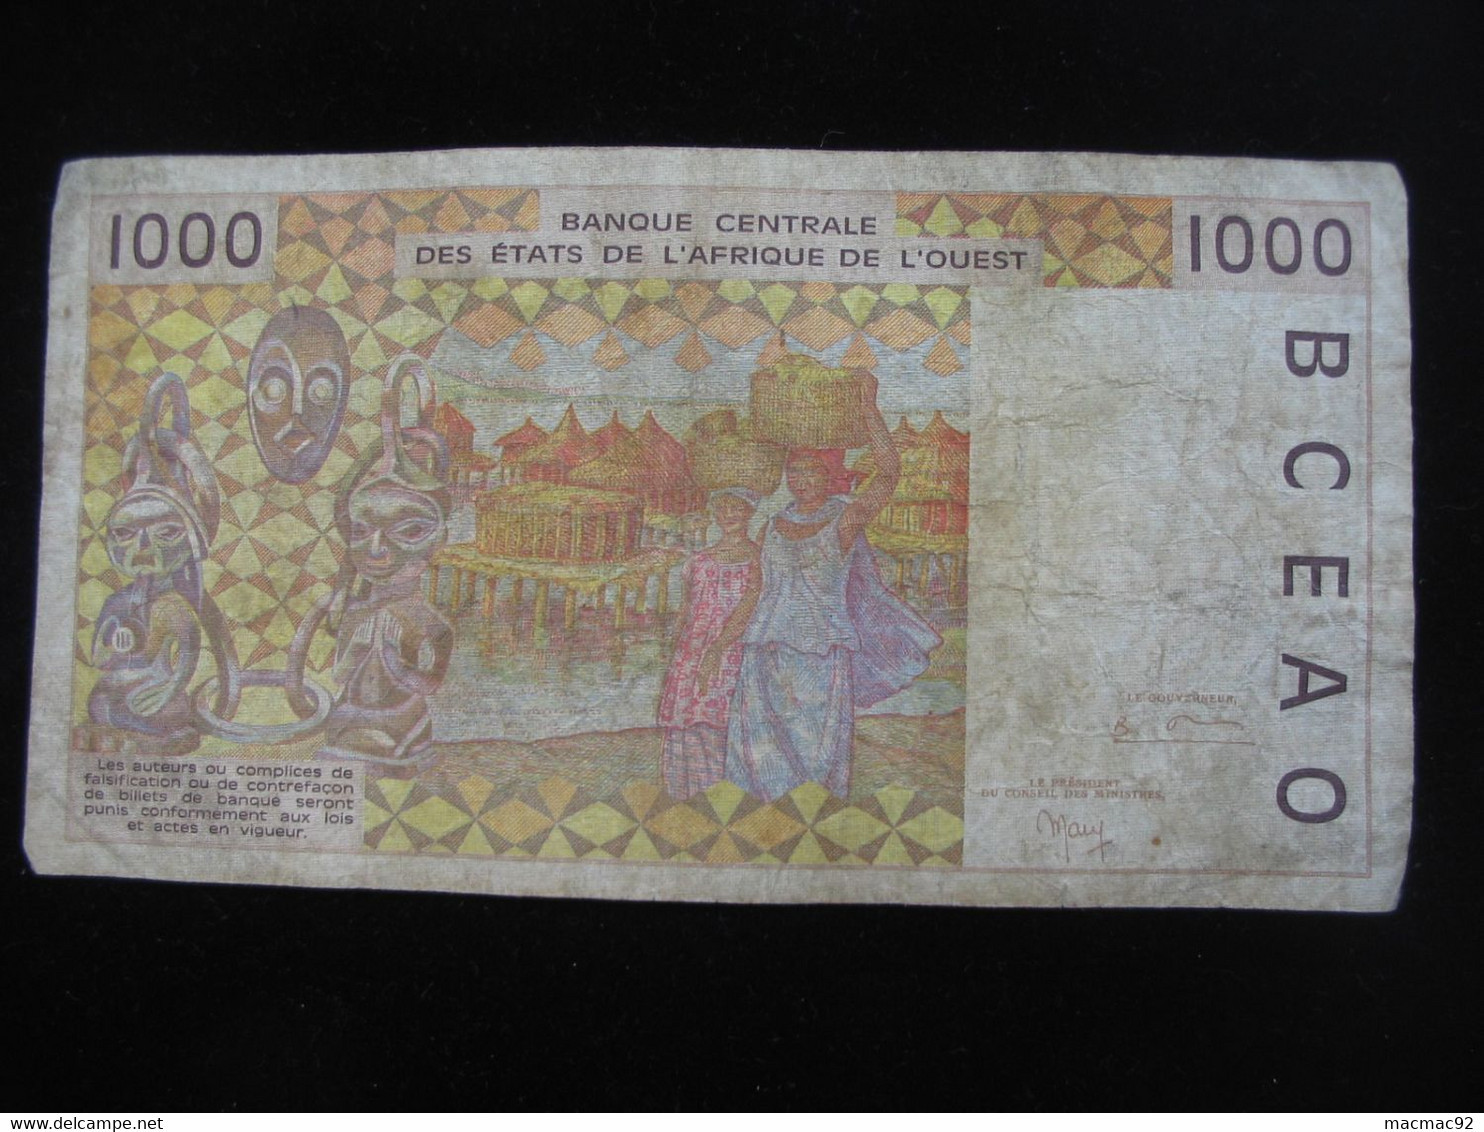 COTE D'IVOIRE - 1000 Francs  1999 A - Banque Centrale Des états De L'Afrique De L'ouest  **** ACHAT IMMEDIAT **** - Costa De Marfil